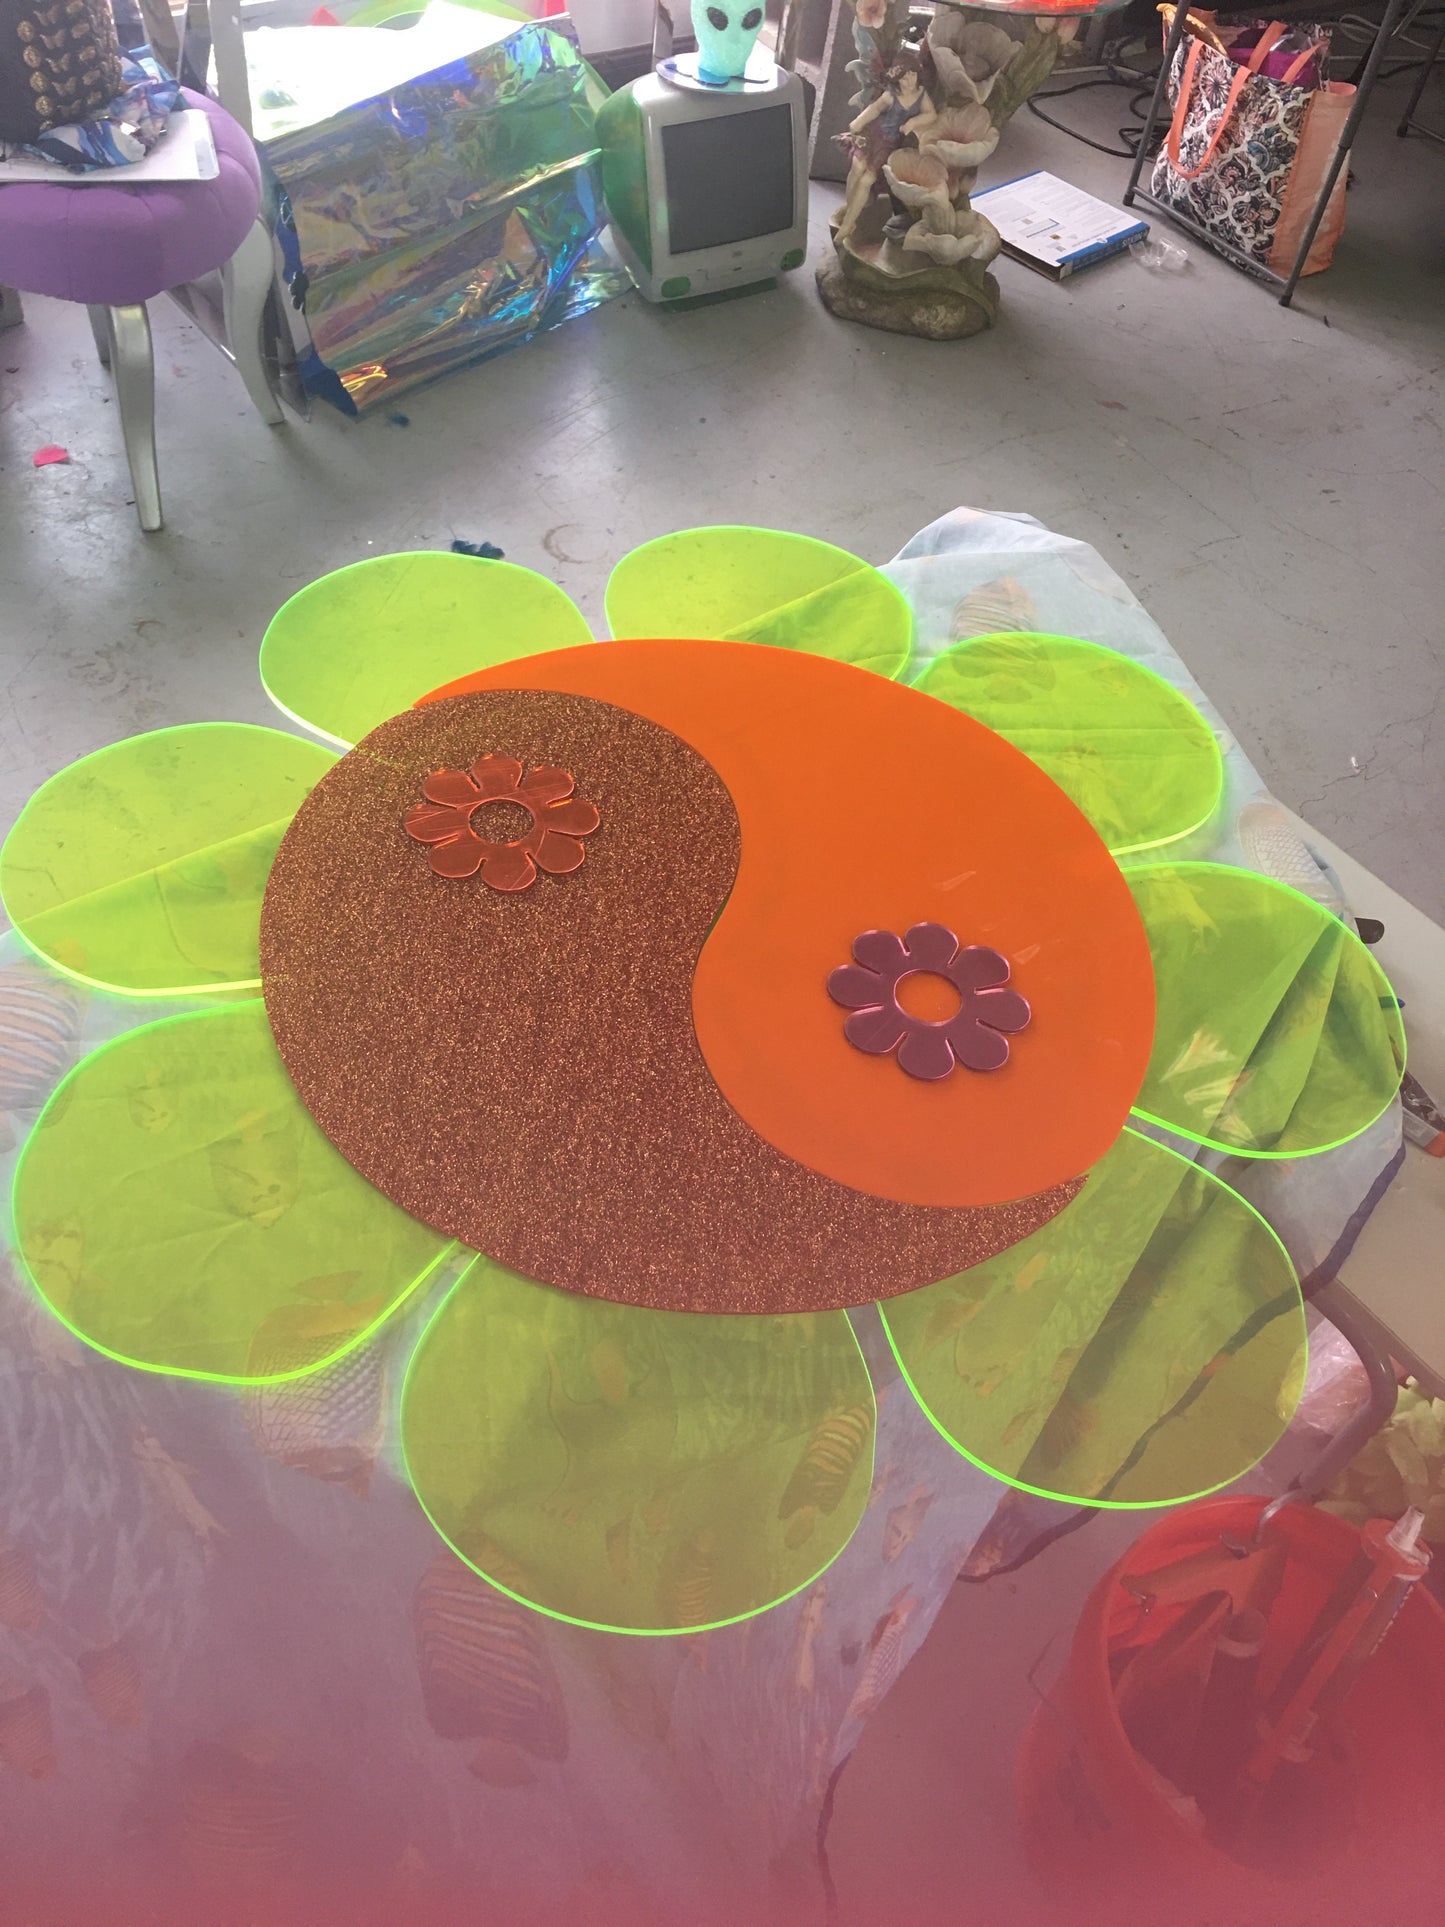 Custom Neon Flower butterfly mirror